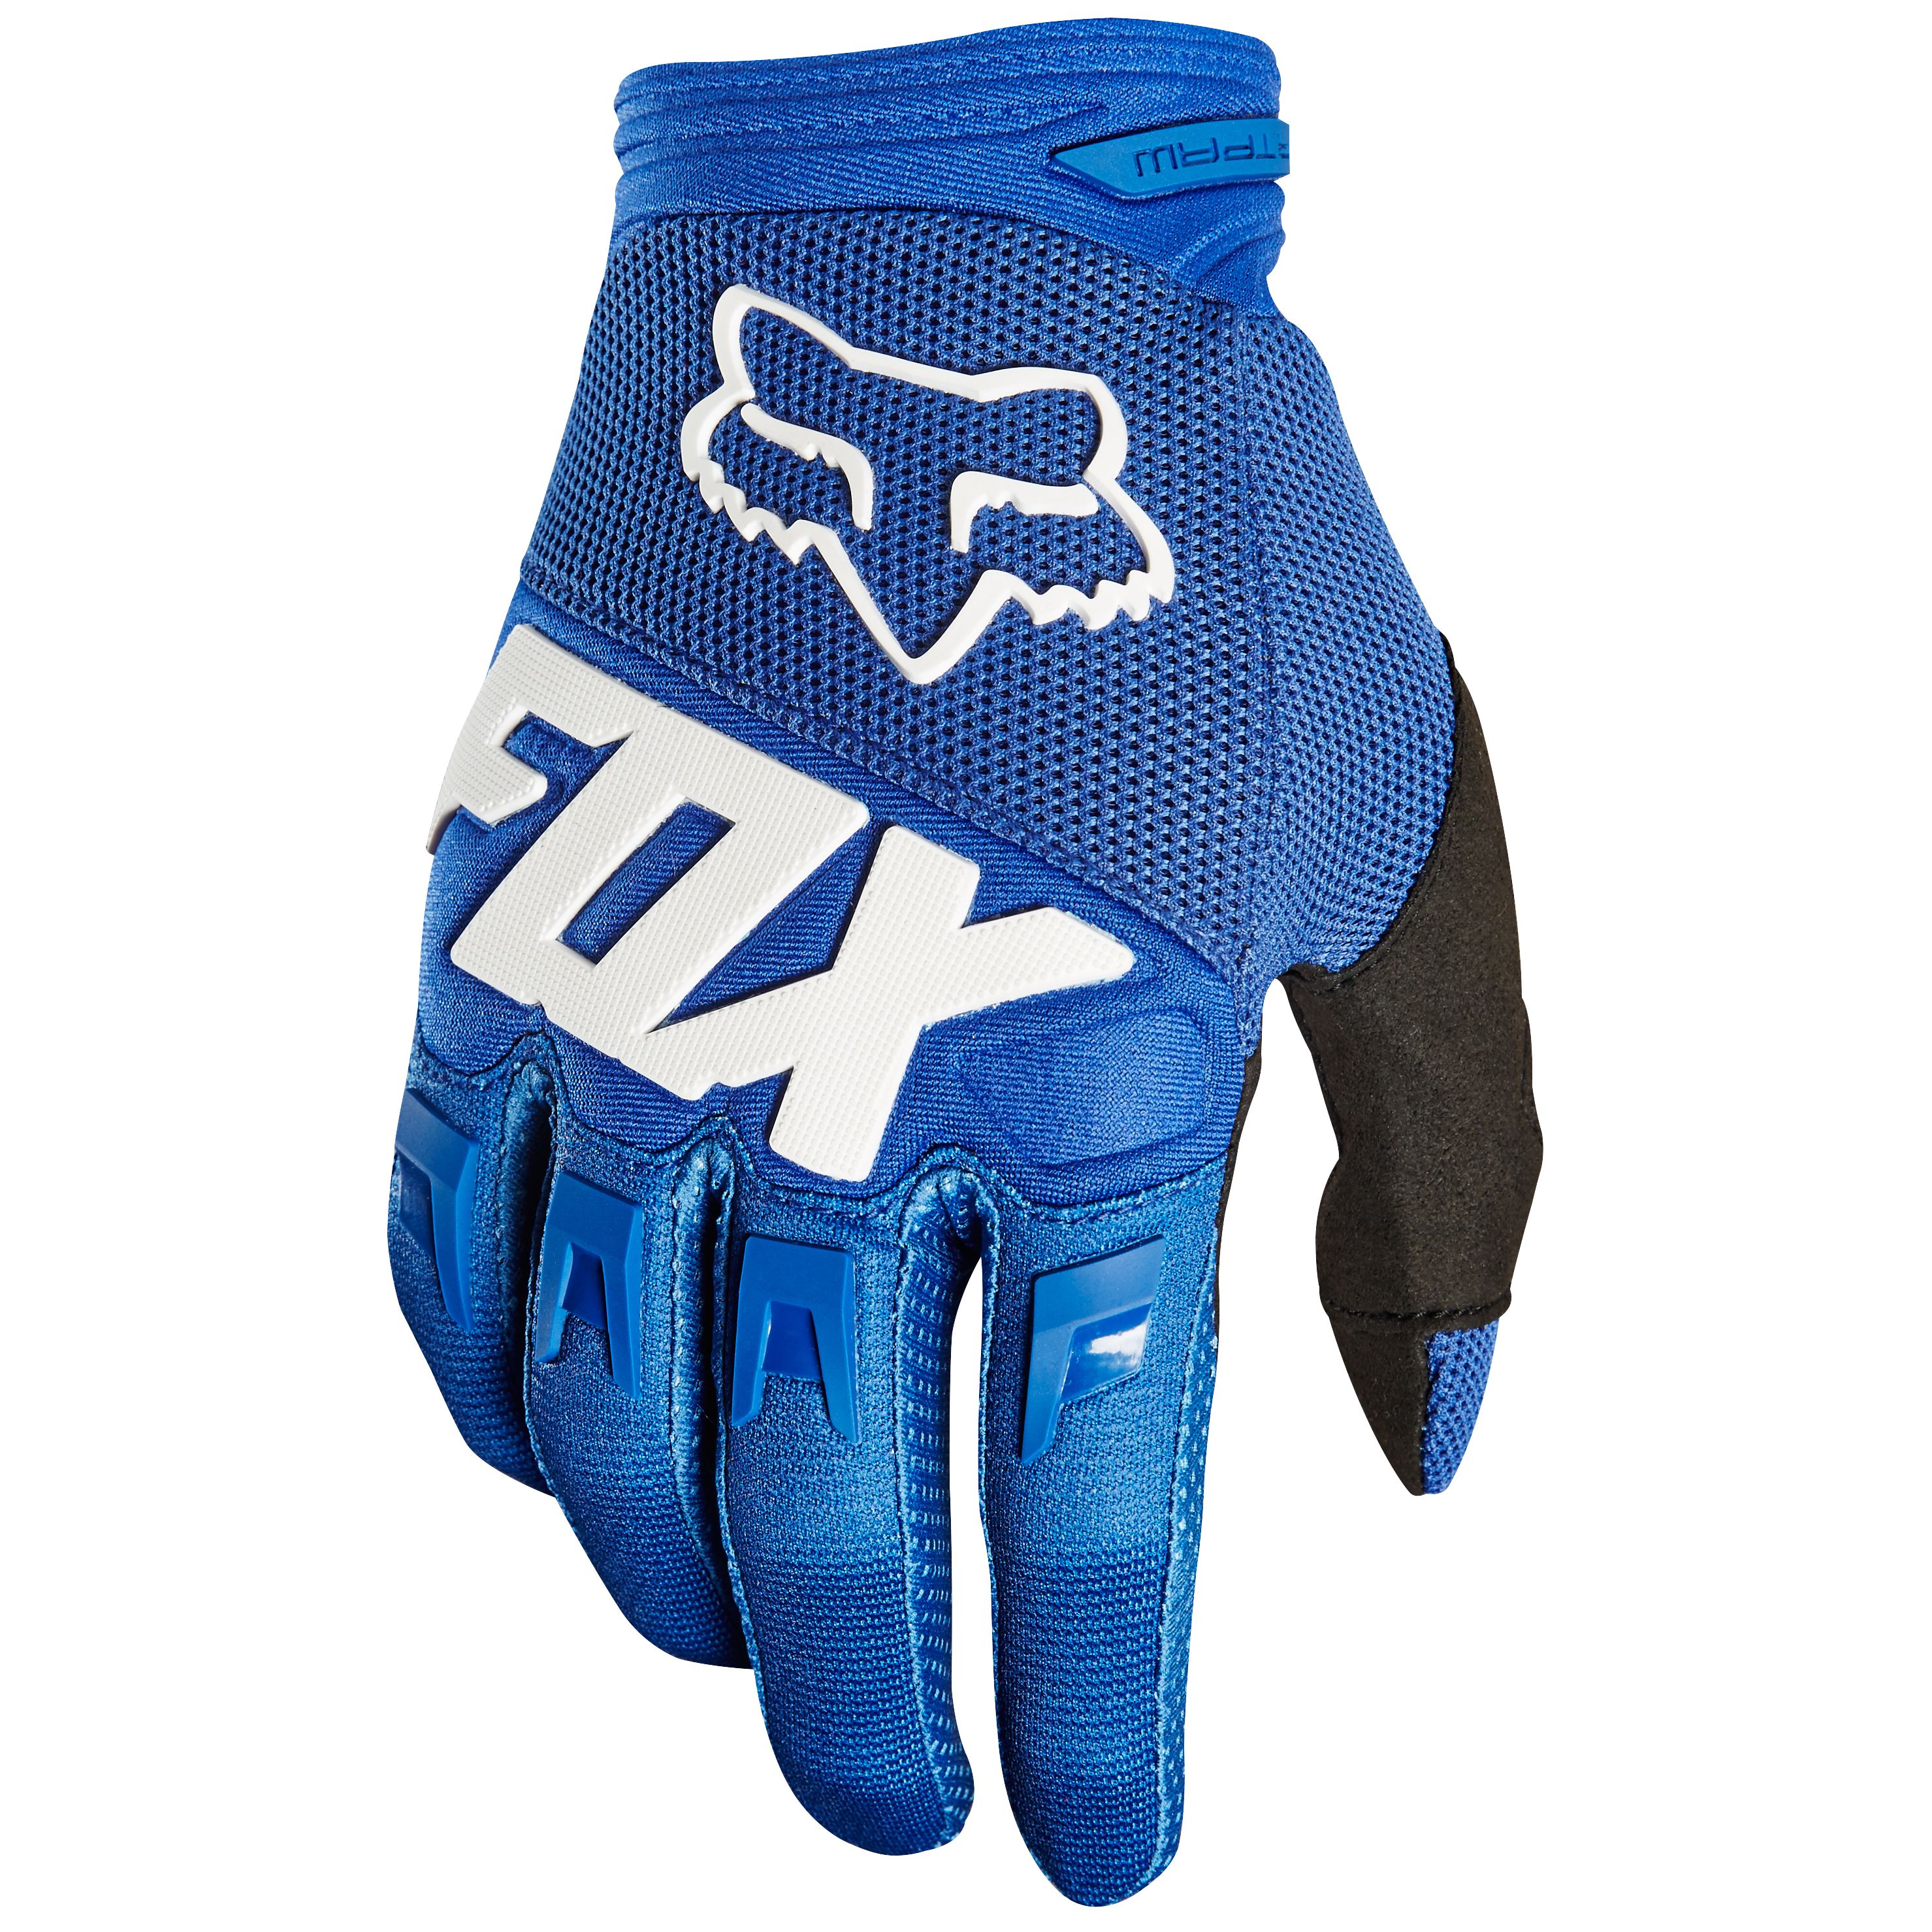 Gants Cross Fox Dirtpaw Race - Bleu -